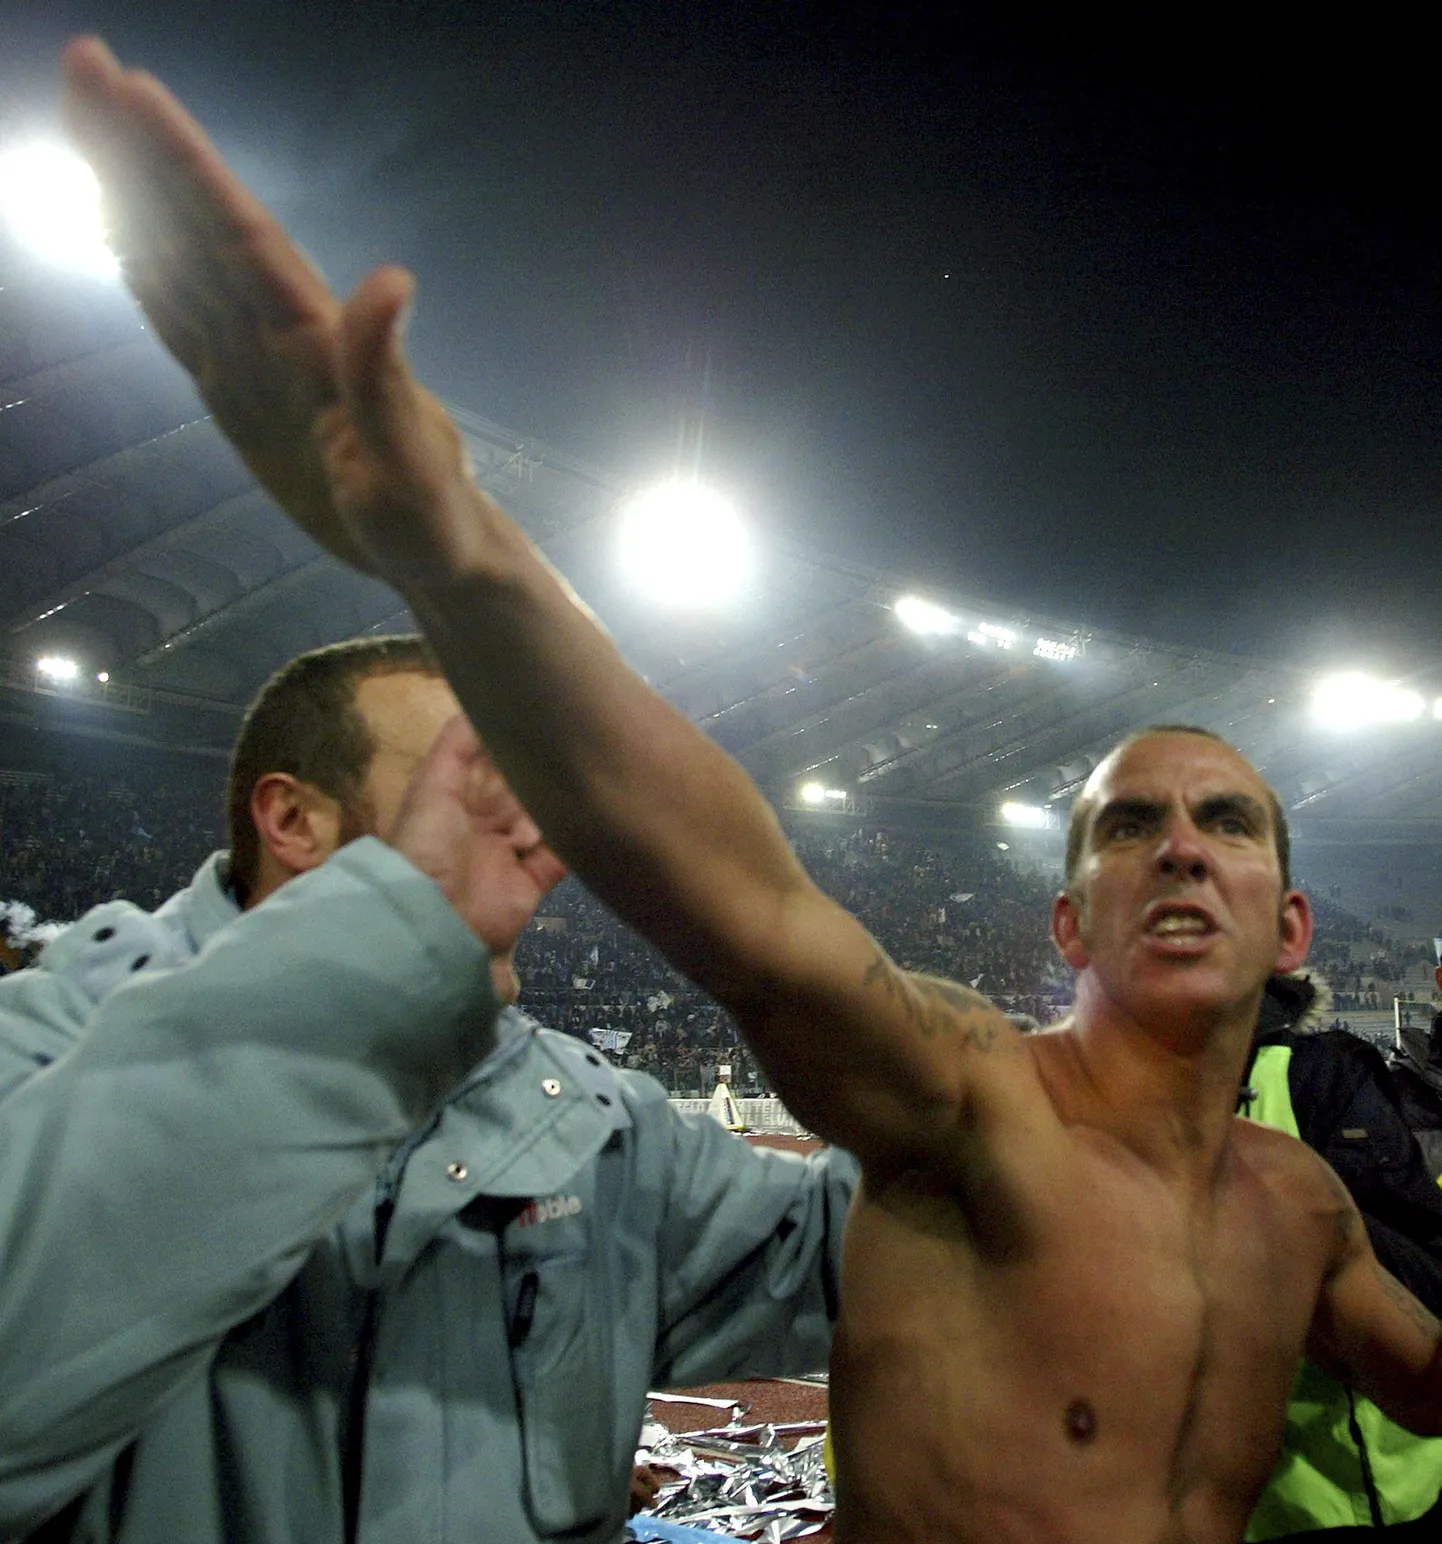 В 2005 году футболист итальянского "Лацио" Паоло Ди Канио, который является поклонником Муссолини, поприветствовал публику нацистским жестом.